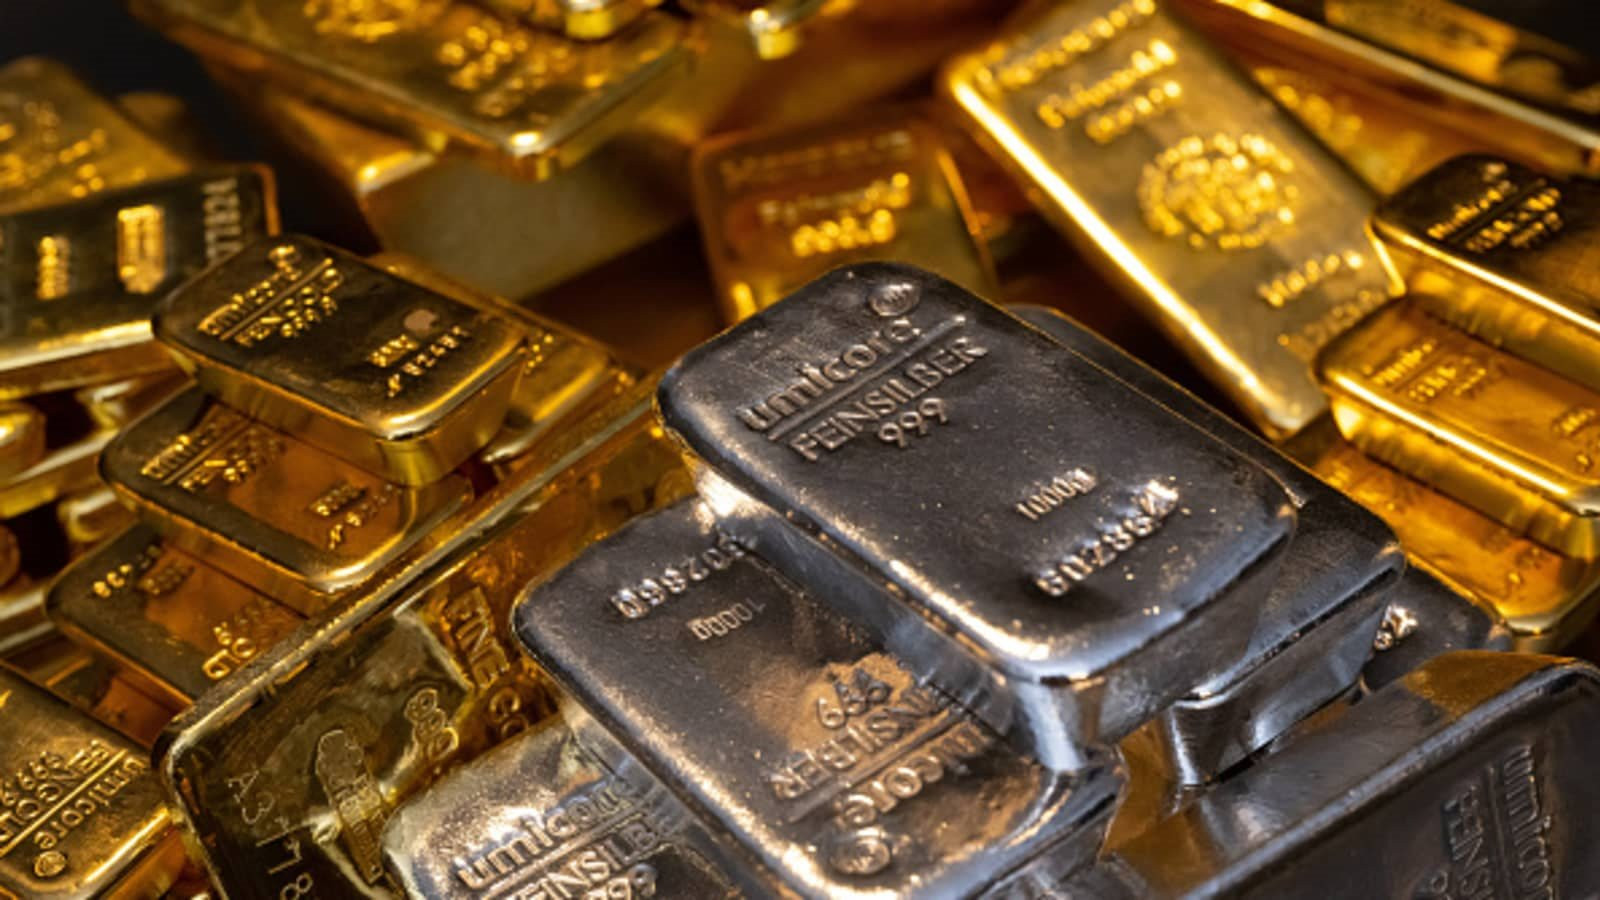 Một kim loại quý bỗng lên "cơn sốt" tại quốc gia tiêu thụ vàng lớn thứ 2 thế giới: nhập khẩu tăng 260%, xu hướng sinh lời tốt hơn cả vàng